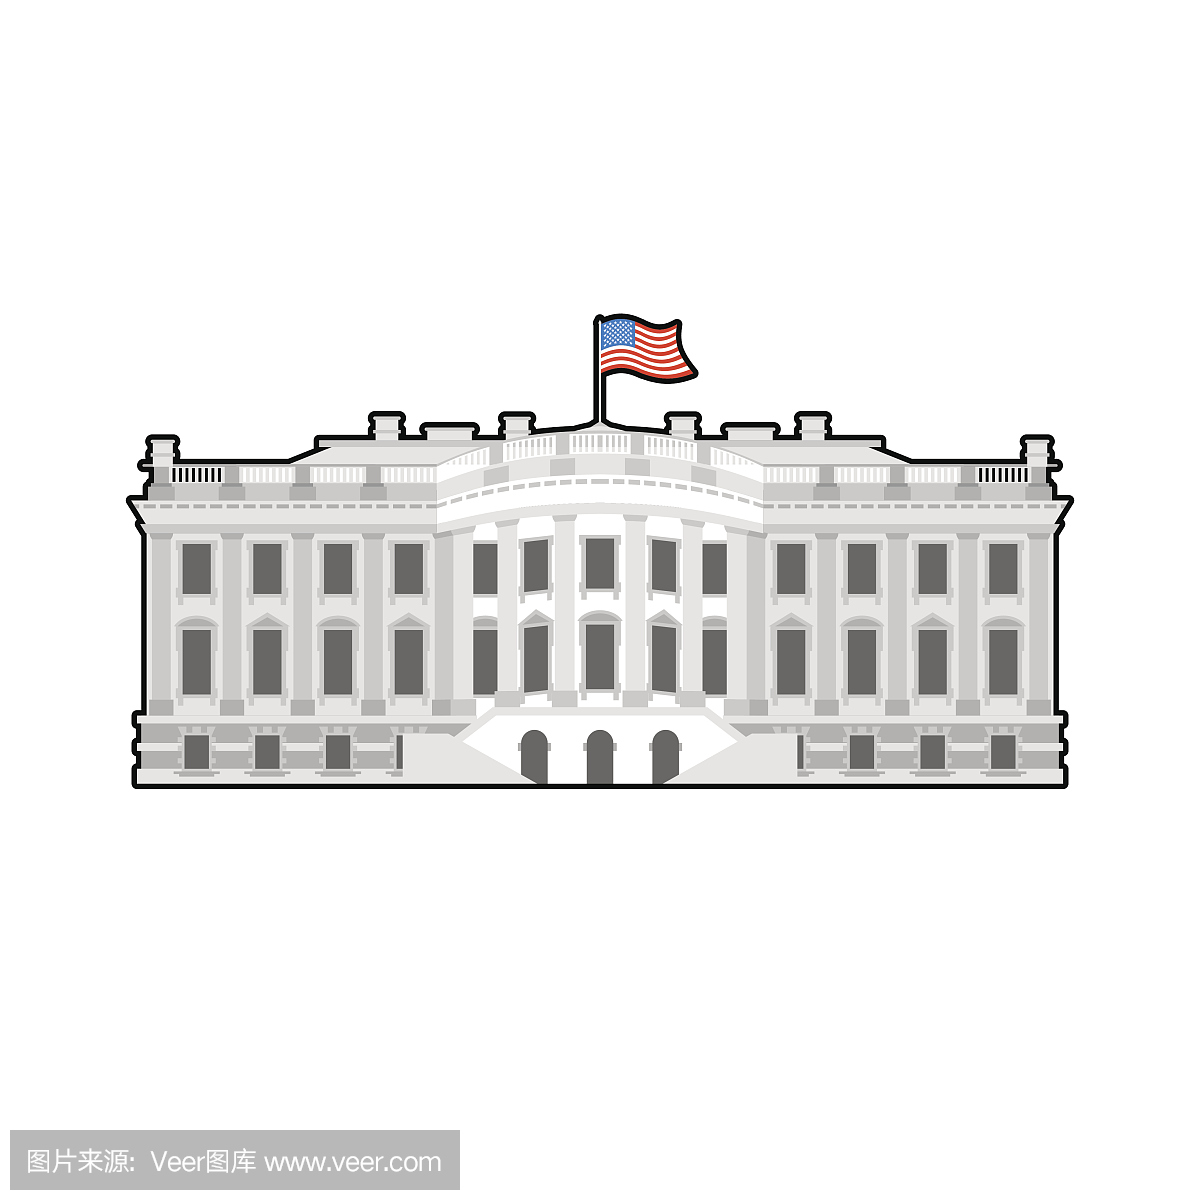 美国白宫。美国总统的住所。美国政府大楼。美